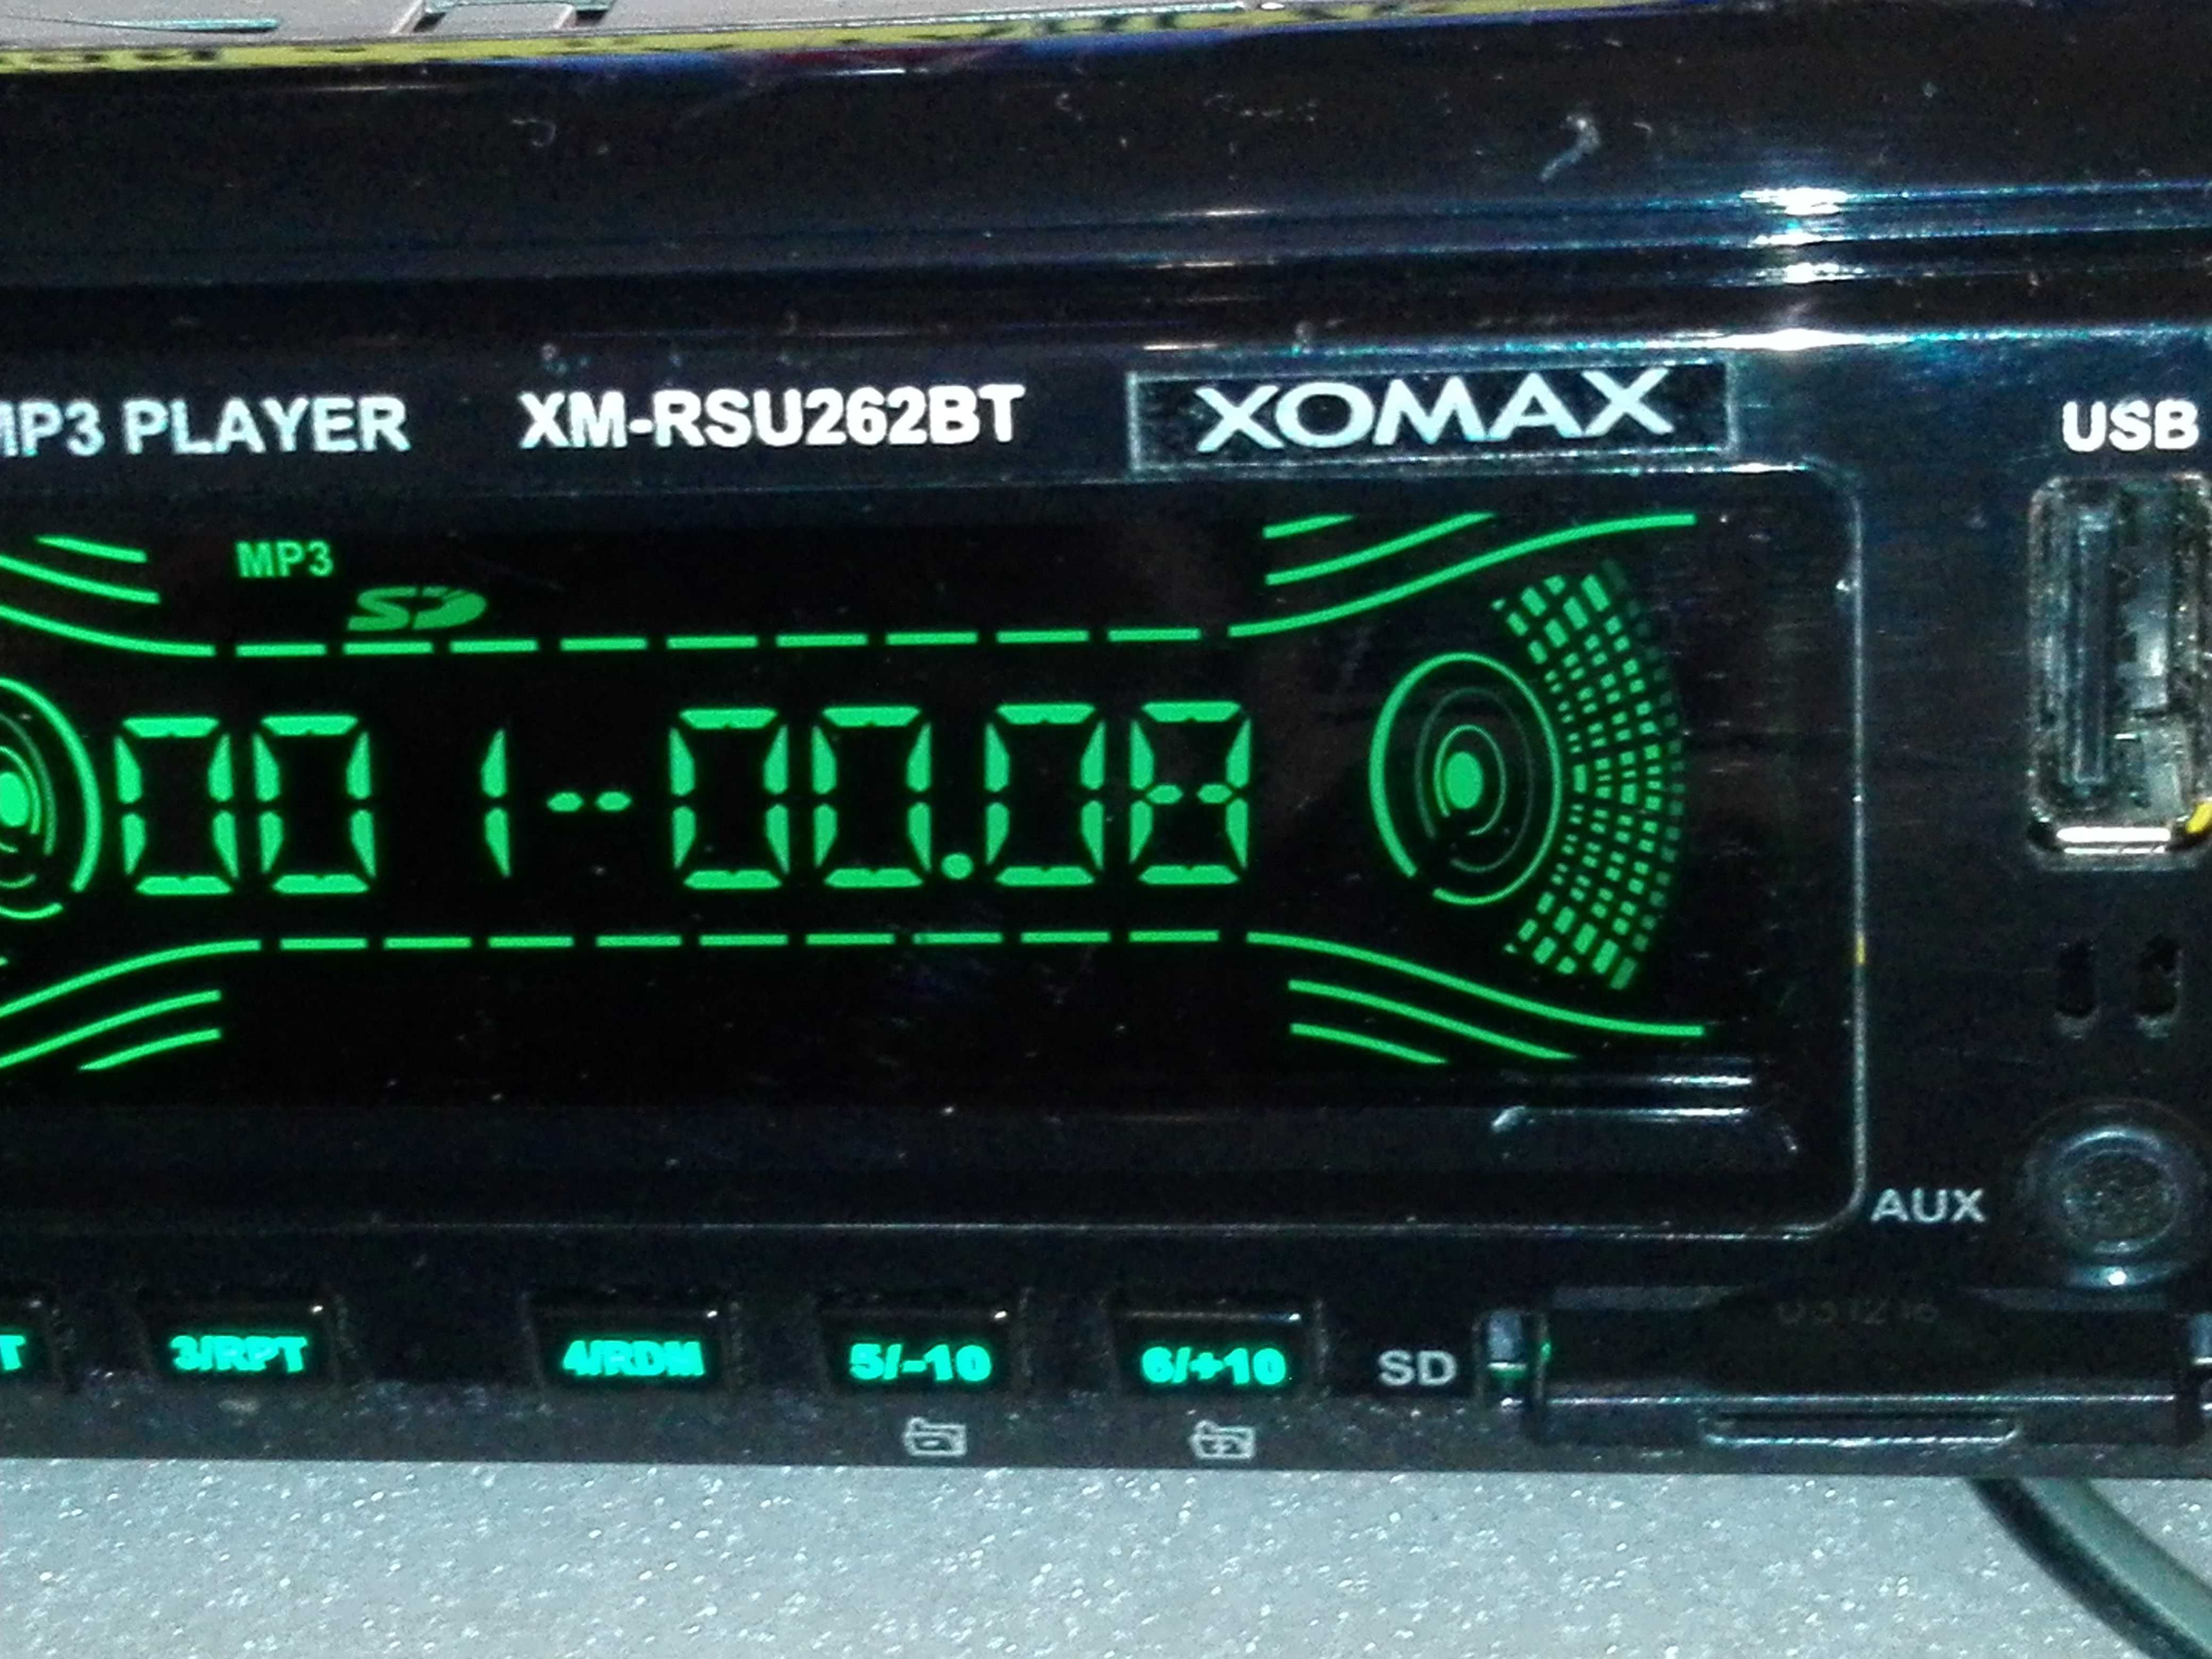 Xomax XM-RSU260BT USB SD MP3 Bluetooth